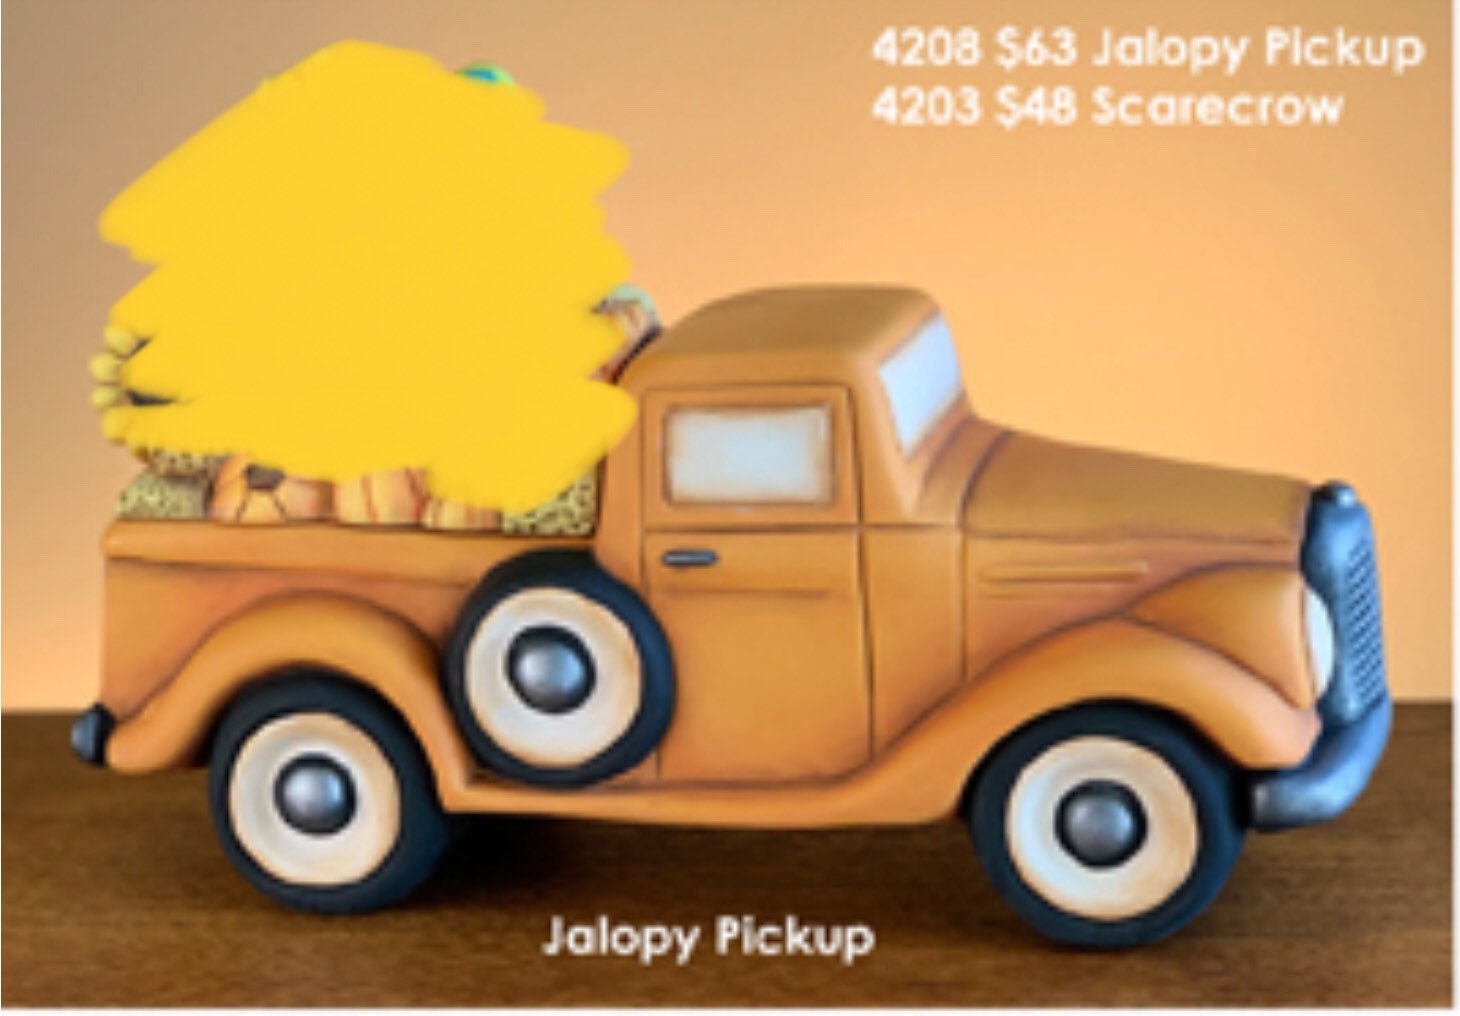 Car vs Pickup - Jalopy Talk